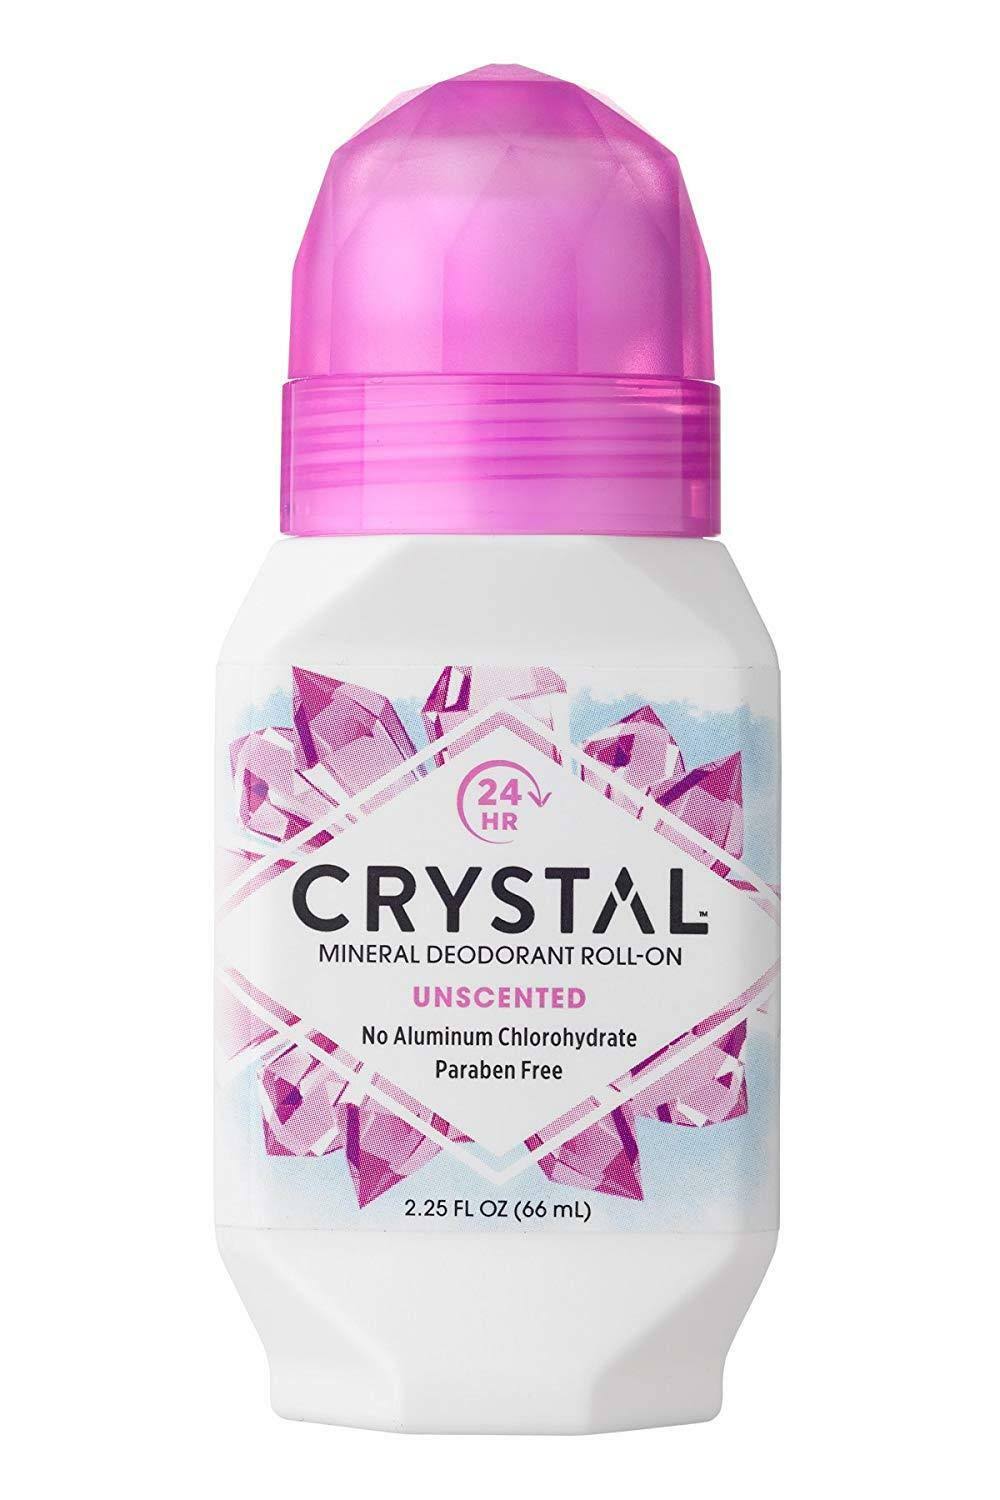 Crystal Body Deodorant Roll-on - 2.25oz